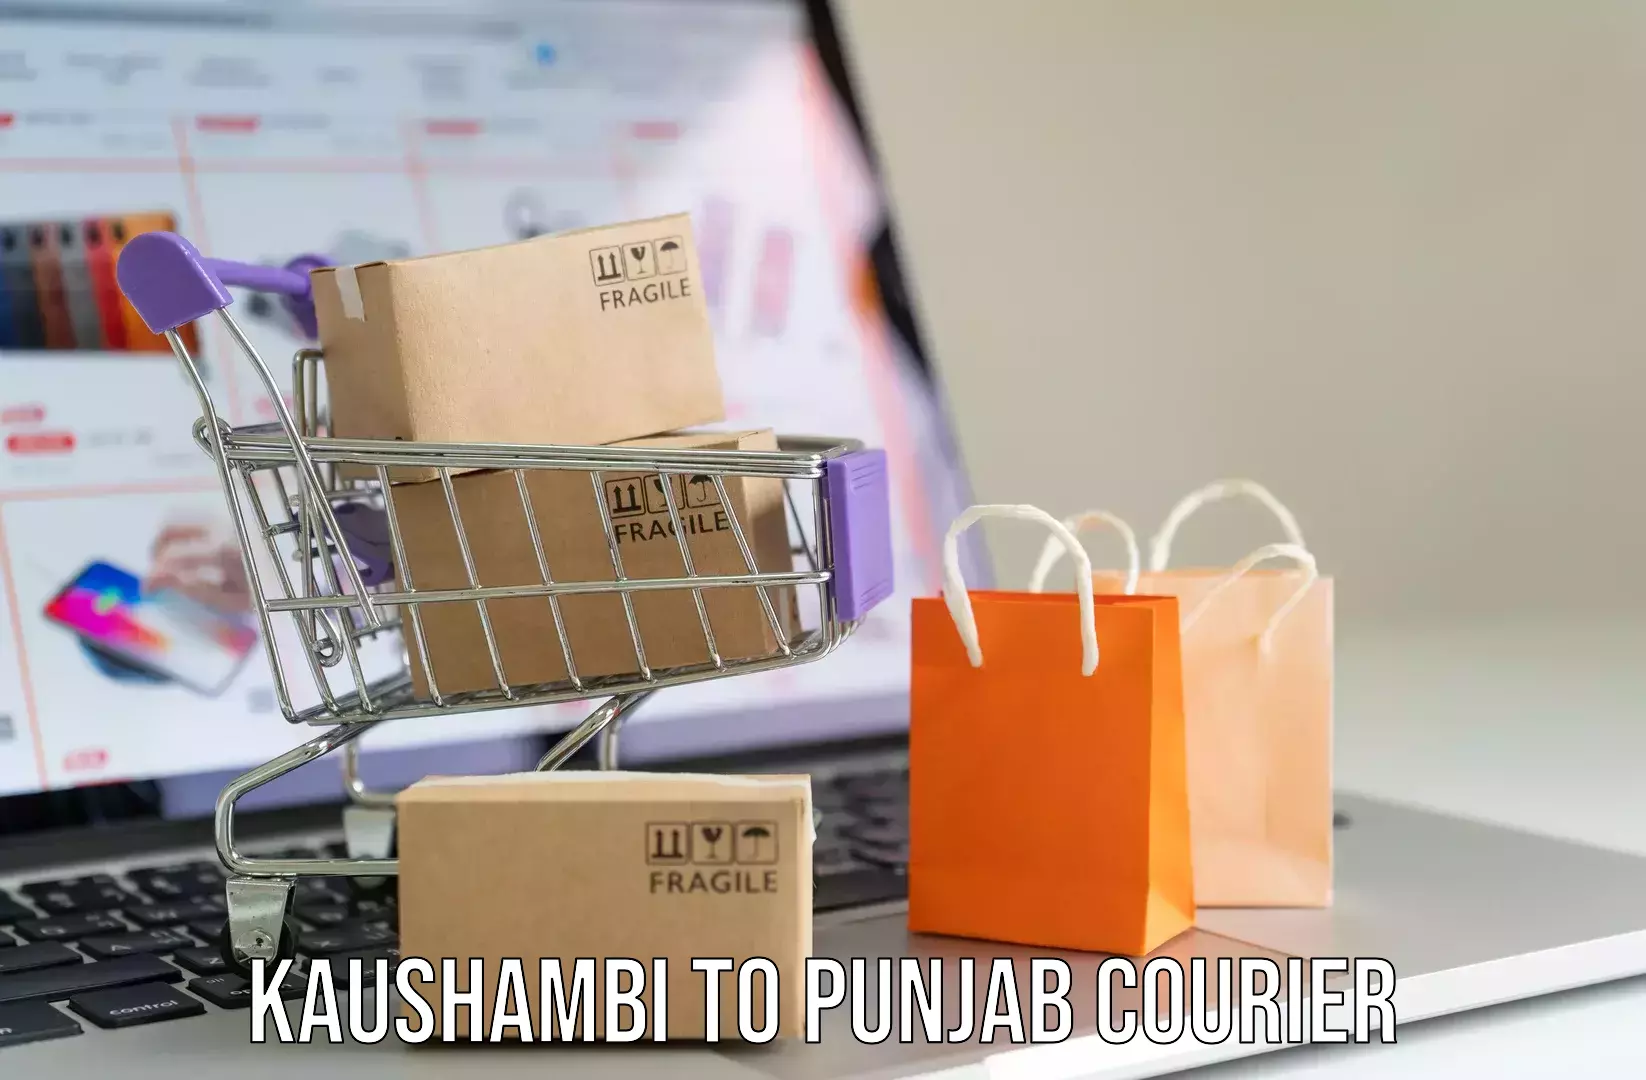 Luggage shipping specialists Kaushambi to Punjab